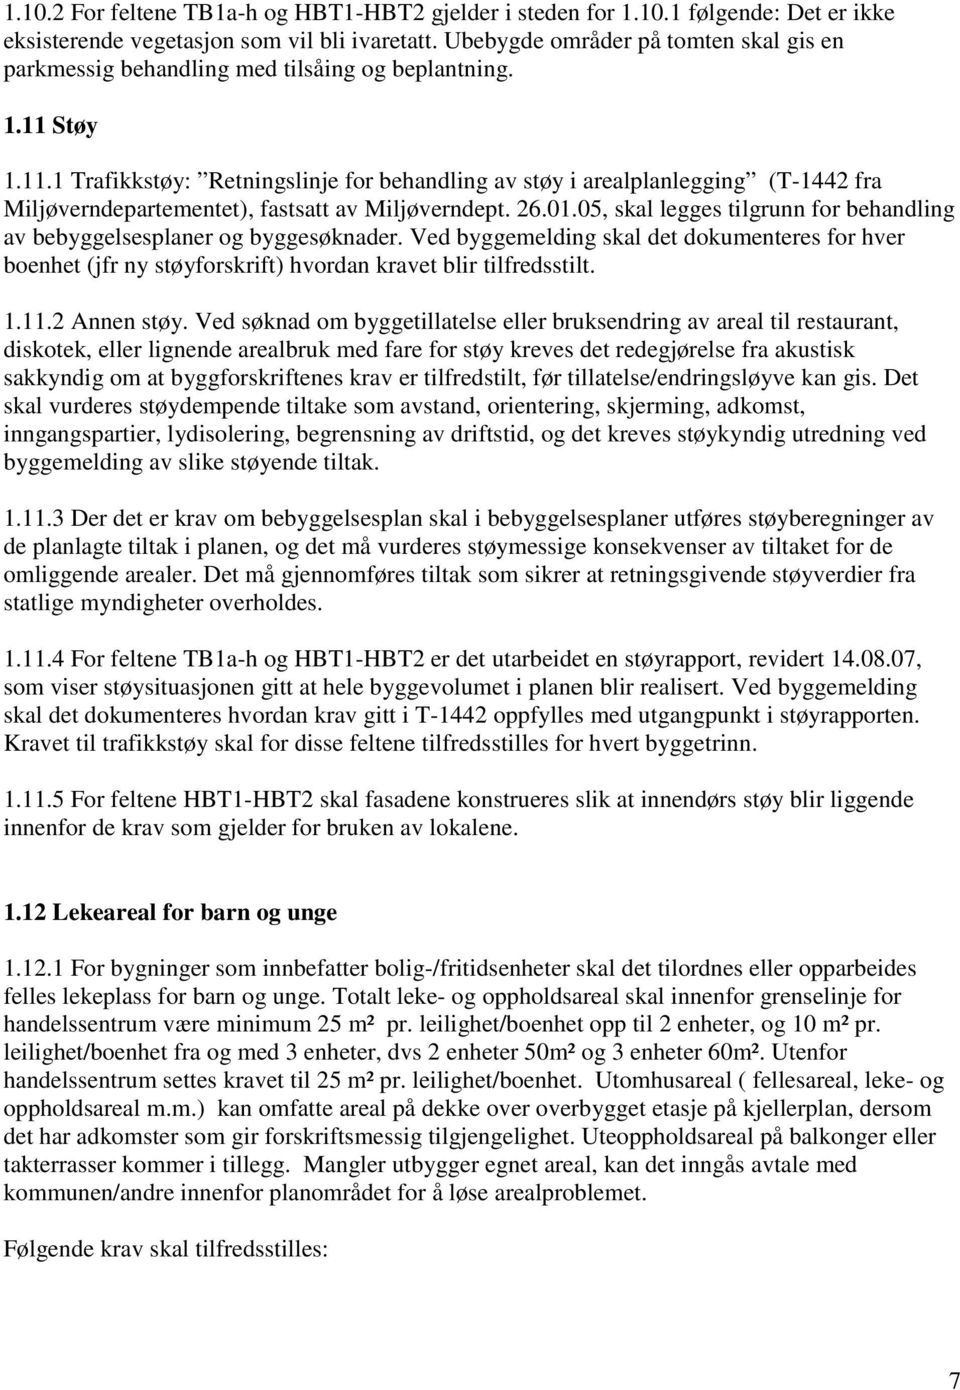 Støy 1.11.1 Trafikkstøy: Retningslinje for behandling av støy i arealplanlegging (T-1442 fra Miljøverndepartementet), fastsatt av Miljøverndept. 26.01.